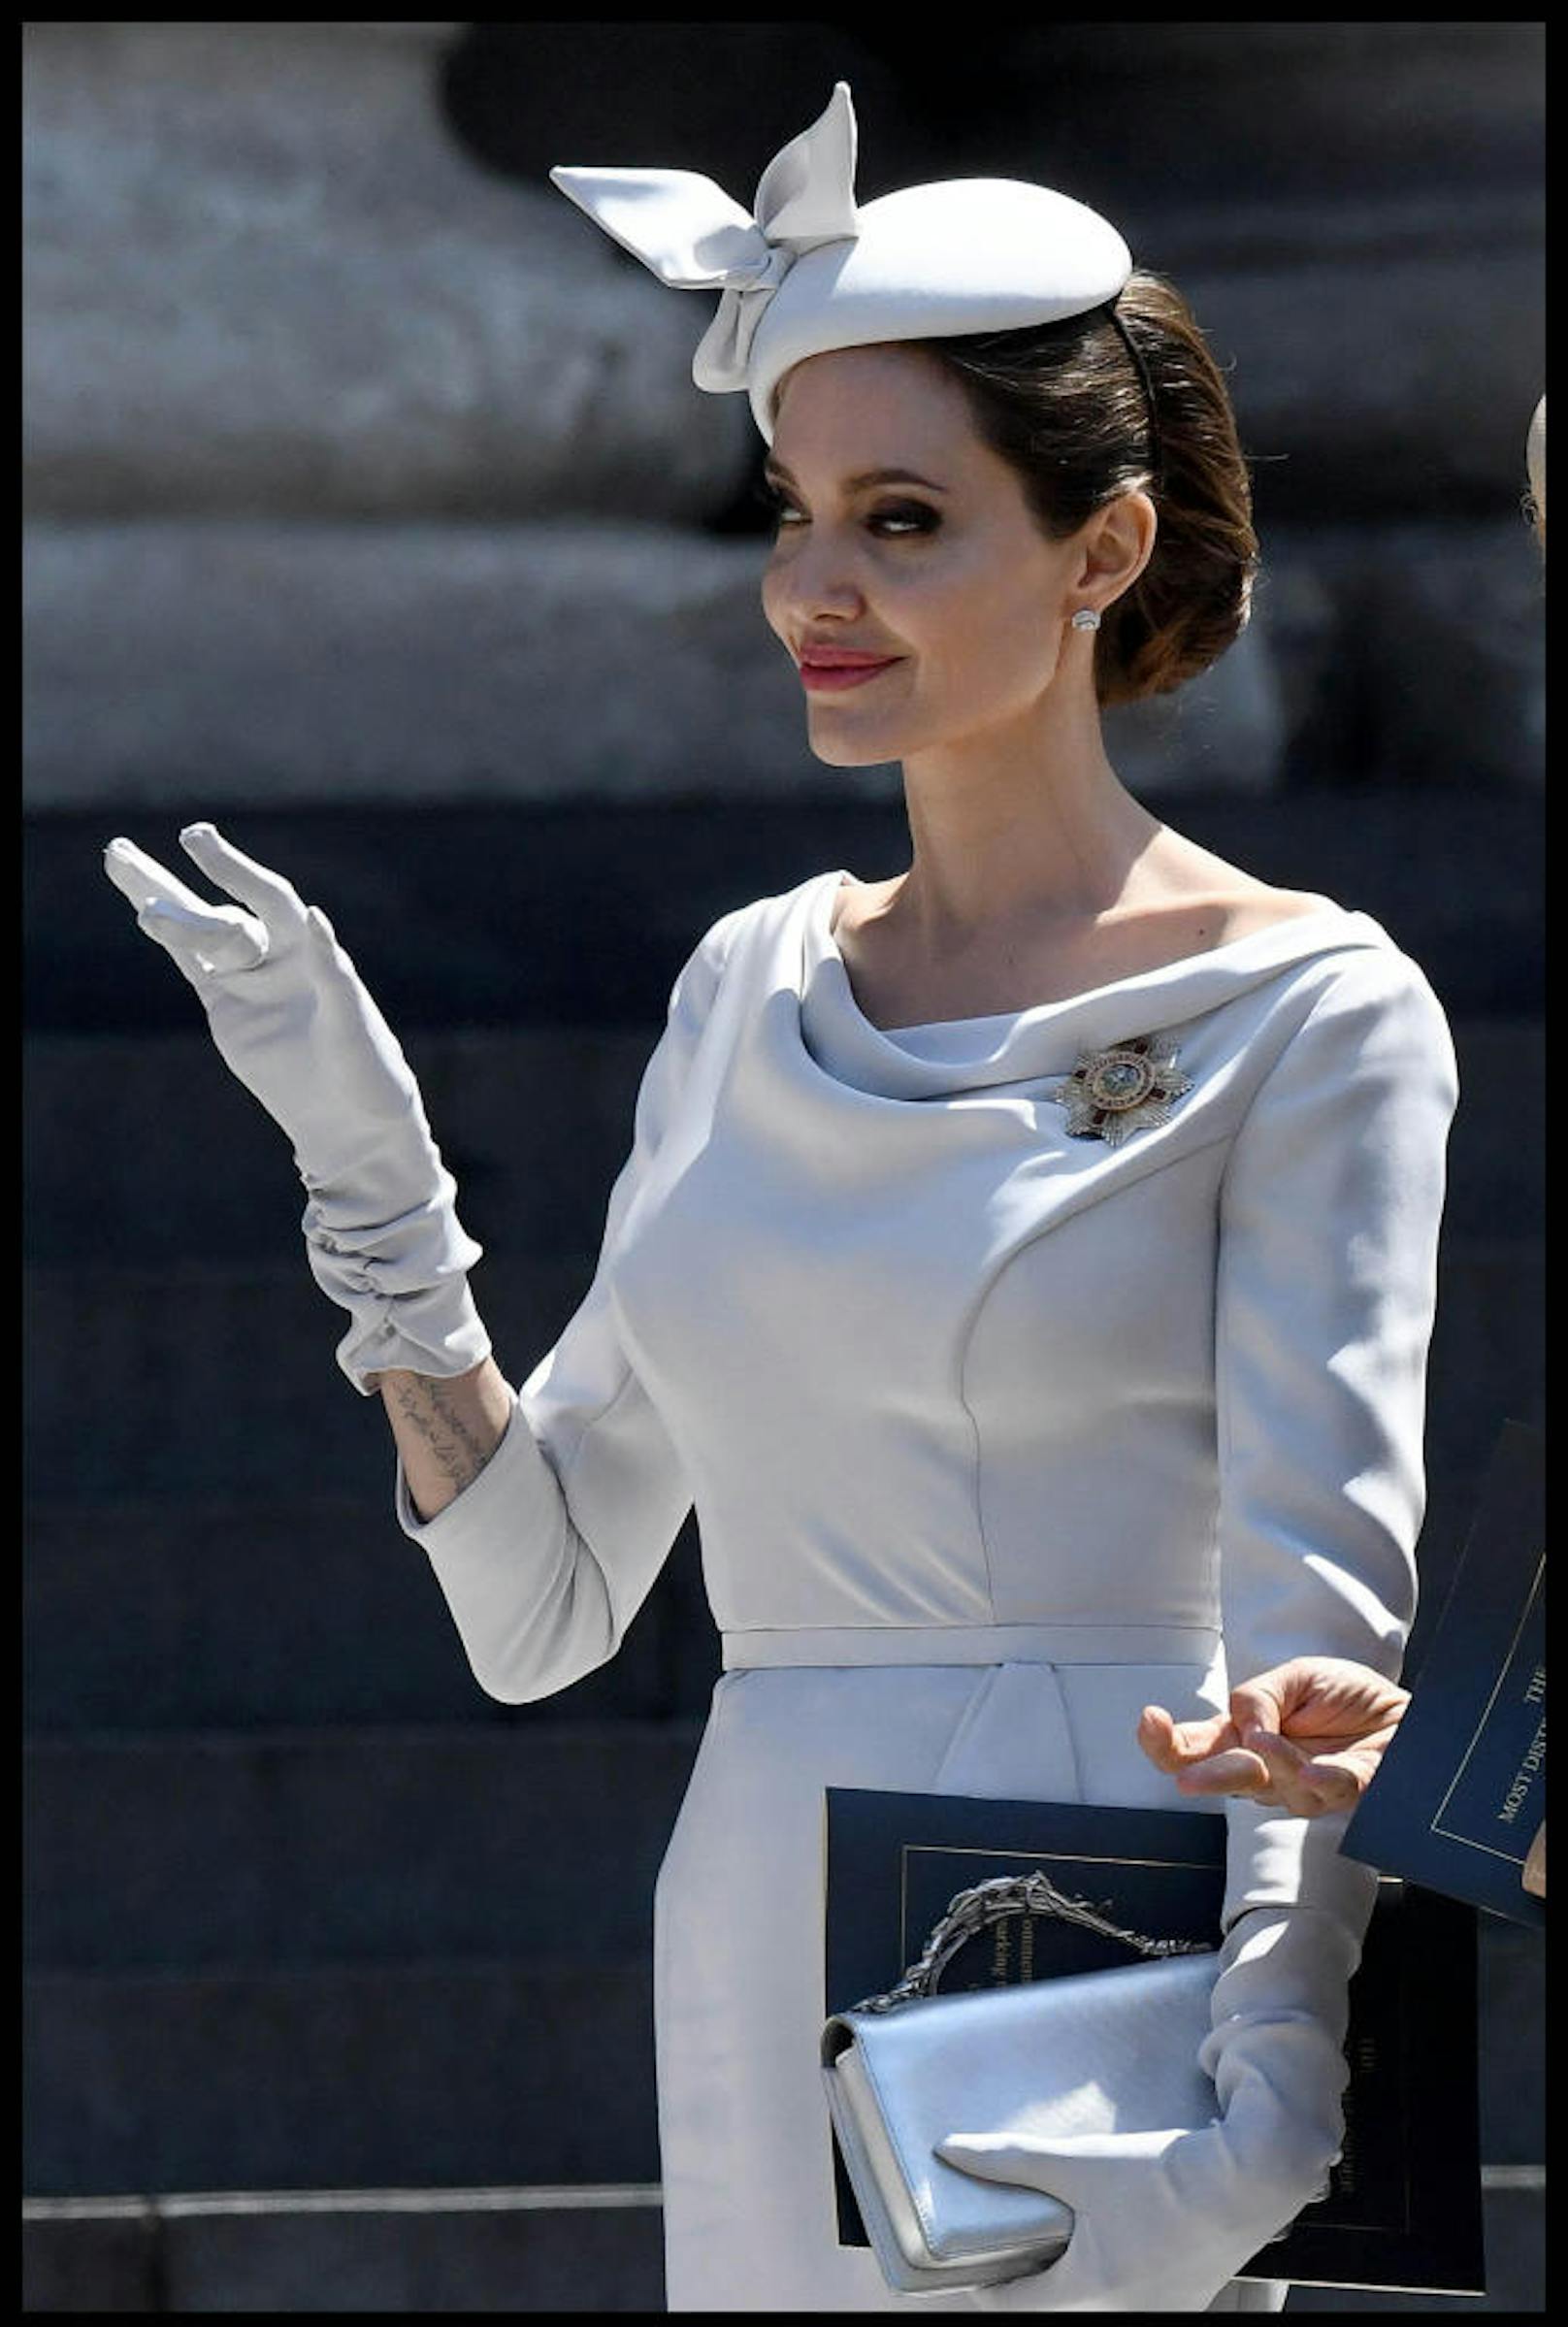 Das perfekte königliche Winken hat Jolie schon drauf.